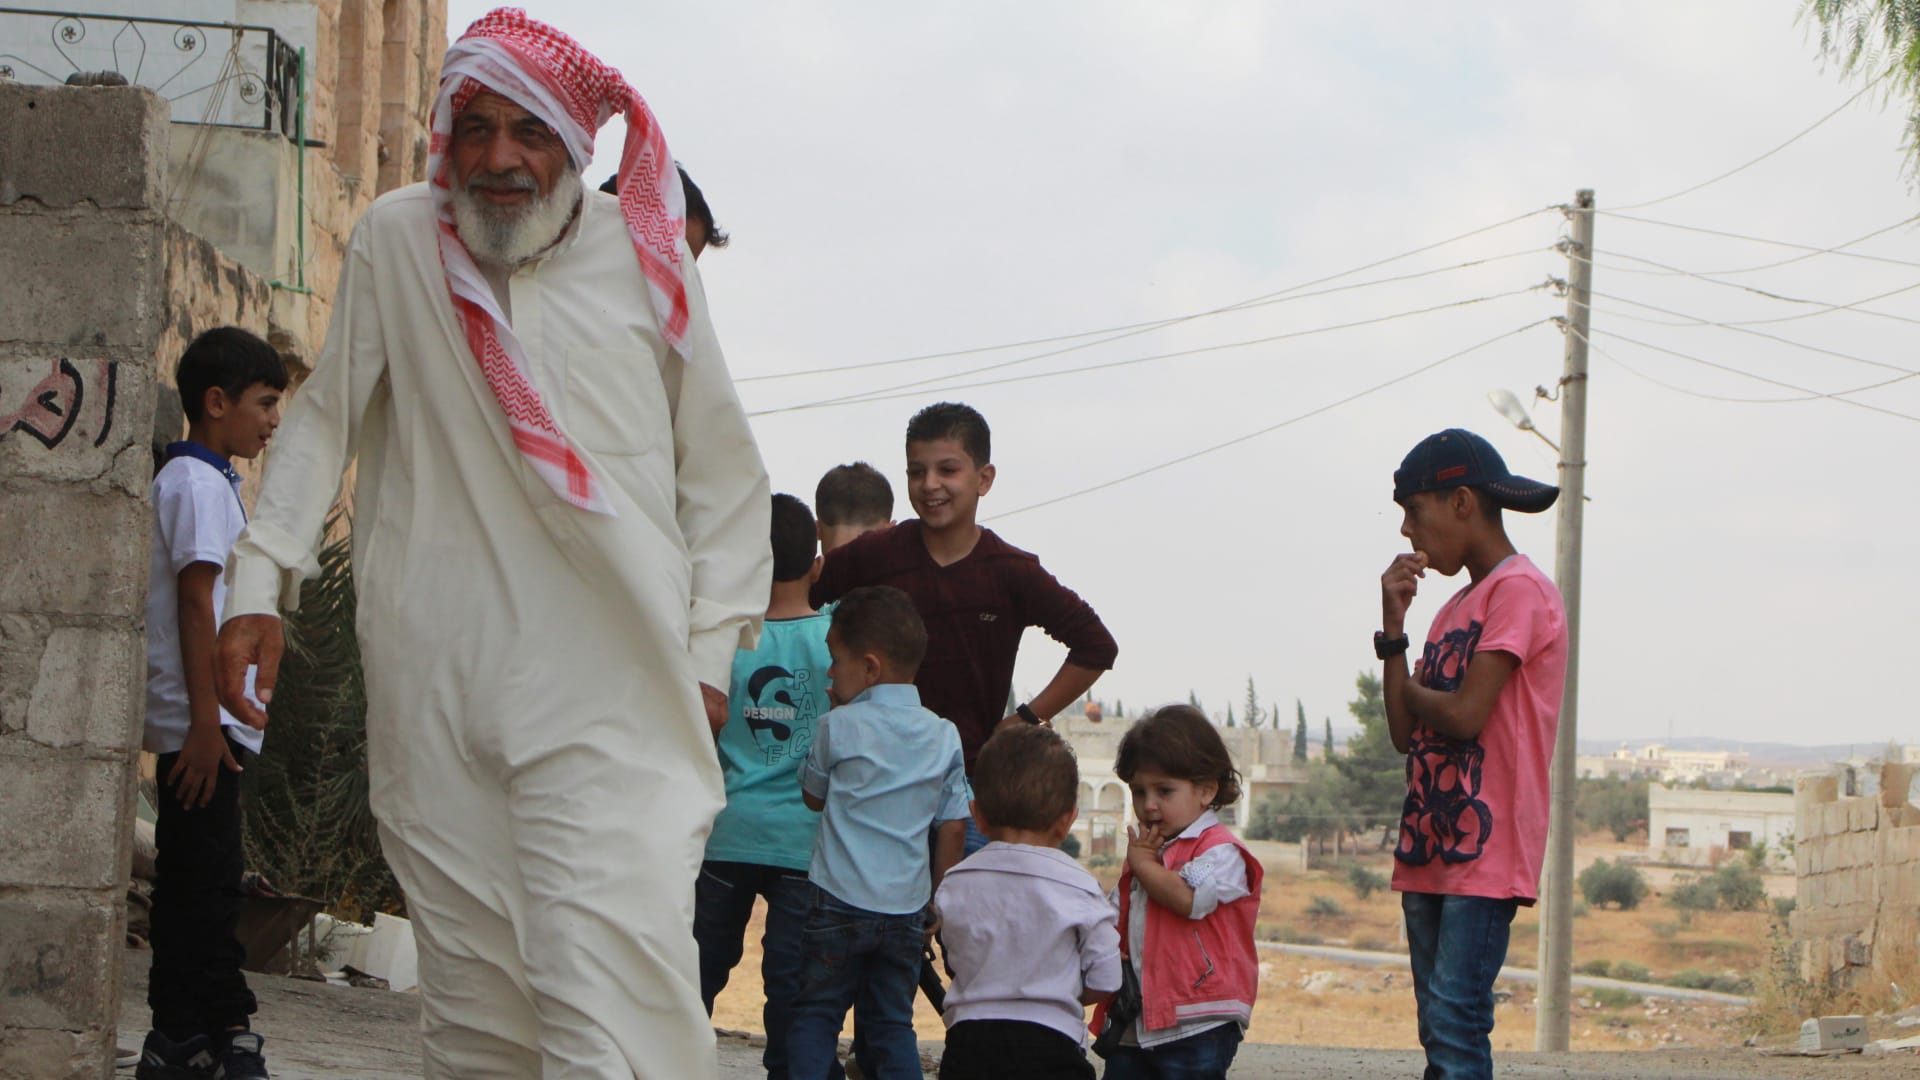 رغم الحرب القاسية.. العيد يرسم بسمات الفرحة البريئة على وجوه أطفال درعا